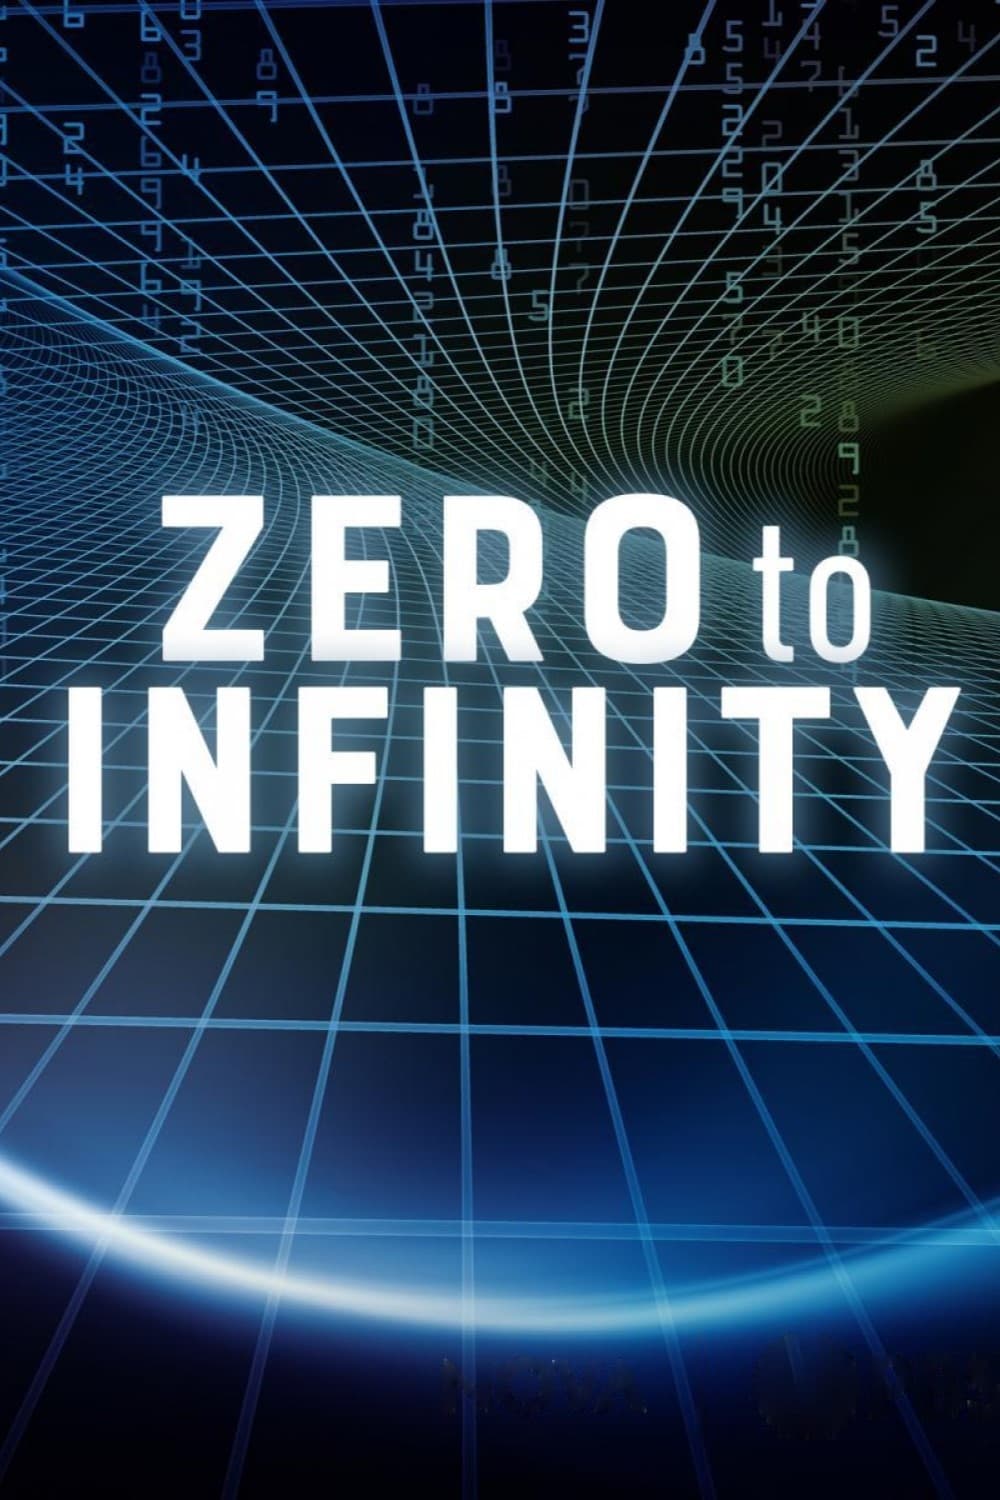 Zero to Infinity